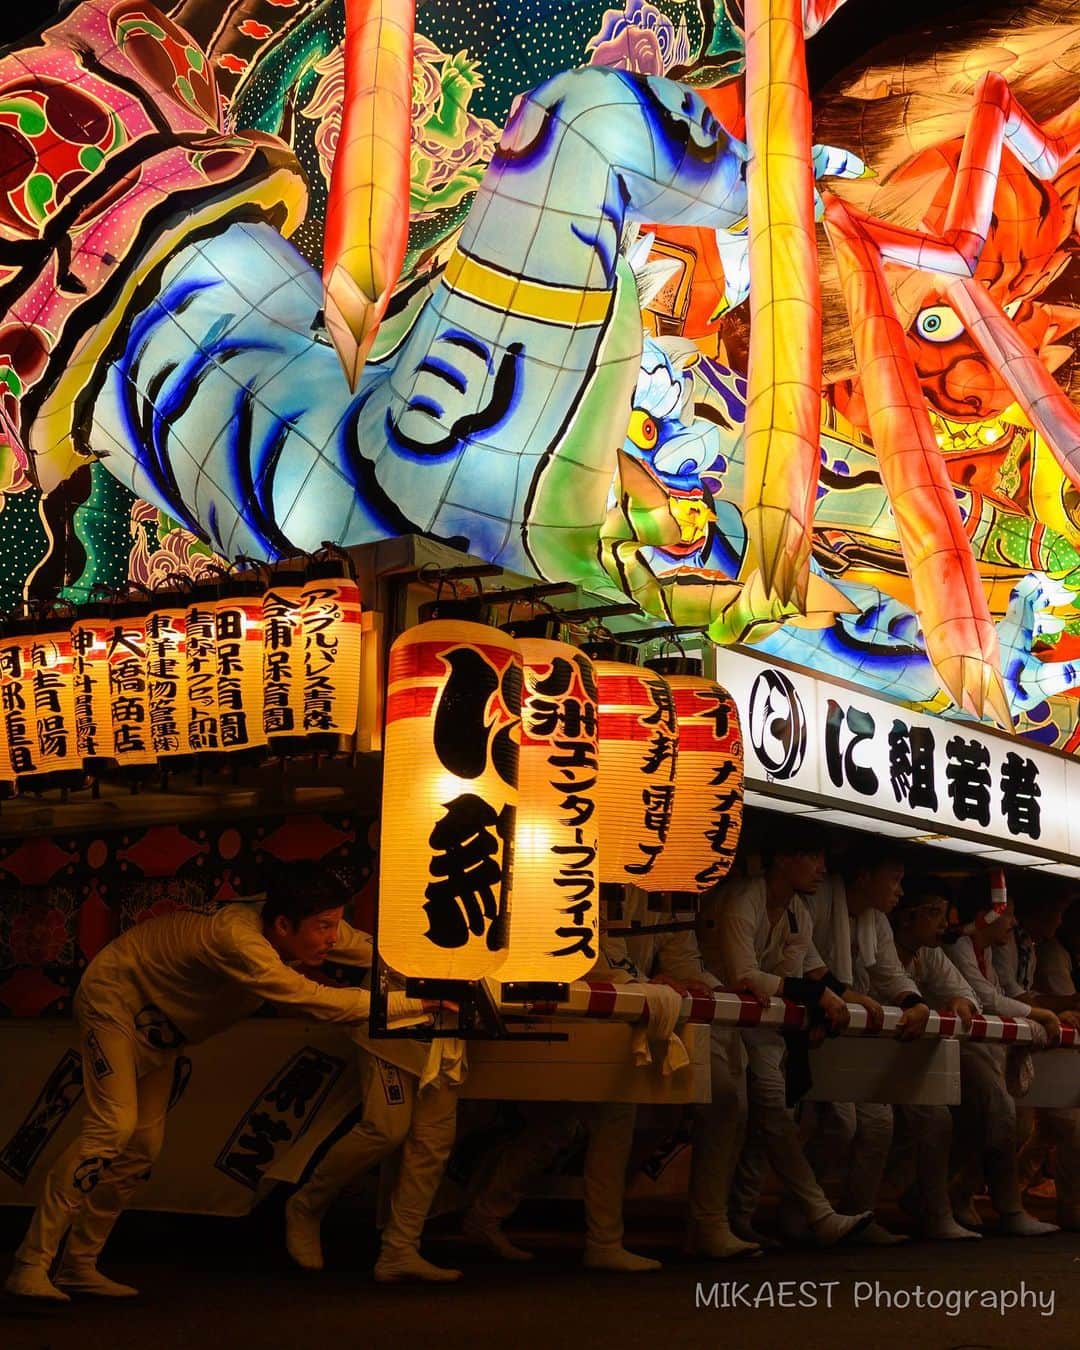 mikaestのインスタグラム：「Aomori Nebuta Festival 青森ねぶた . 青森ねぶたも初観覧。ラッセラーラッセラーという掛け声と共にハネトという踊り子が飛び跳ねて行く中、めちゃくちゃ大きなねぶたが運行され目の前までやってくる迫力が凄いっ!!! . 絵師の人により創られるねぶたの絵もそれぞれ個性溢れています。ちなみに弘前や五所川原のねぶたの形状は青森のと全然違いますし、ねぶたも奥が深い…🤔 . それと、ねぶたって、この写真のように人手で押したり上げ下げしたり回転したりしているのを初めて知りました!!それに感動して、この写真はねぶたを斜めから撮っているのでねぶたの正面が写っていませんがご容赦くださいw . この #に組 #東芝 のねぶたは賞を獲っていました㊗️ . 東北のお祭り、ハマりますよ🙆‍♀️ . Nikon Z6 . #青森ねぶた #行くぜ東北 #夏の東北インスタキャンペーン #funfindtohoku #青森 #TandDフォトコンテスト2019 #try #いきいきフォトコンテスト2019」